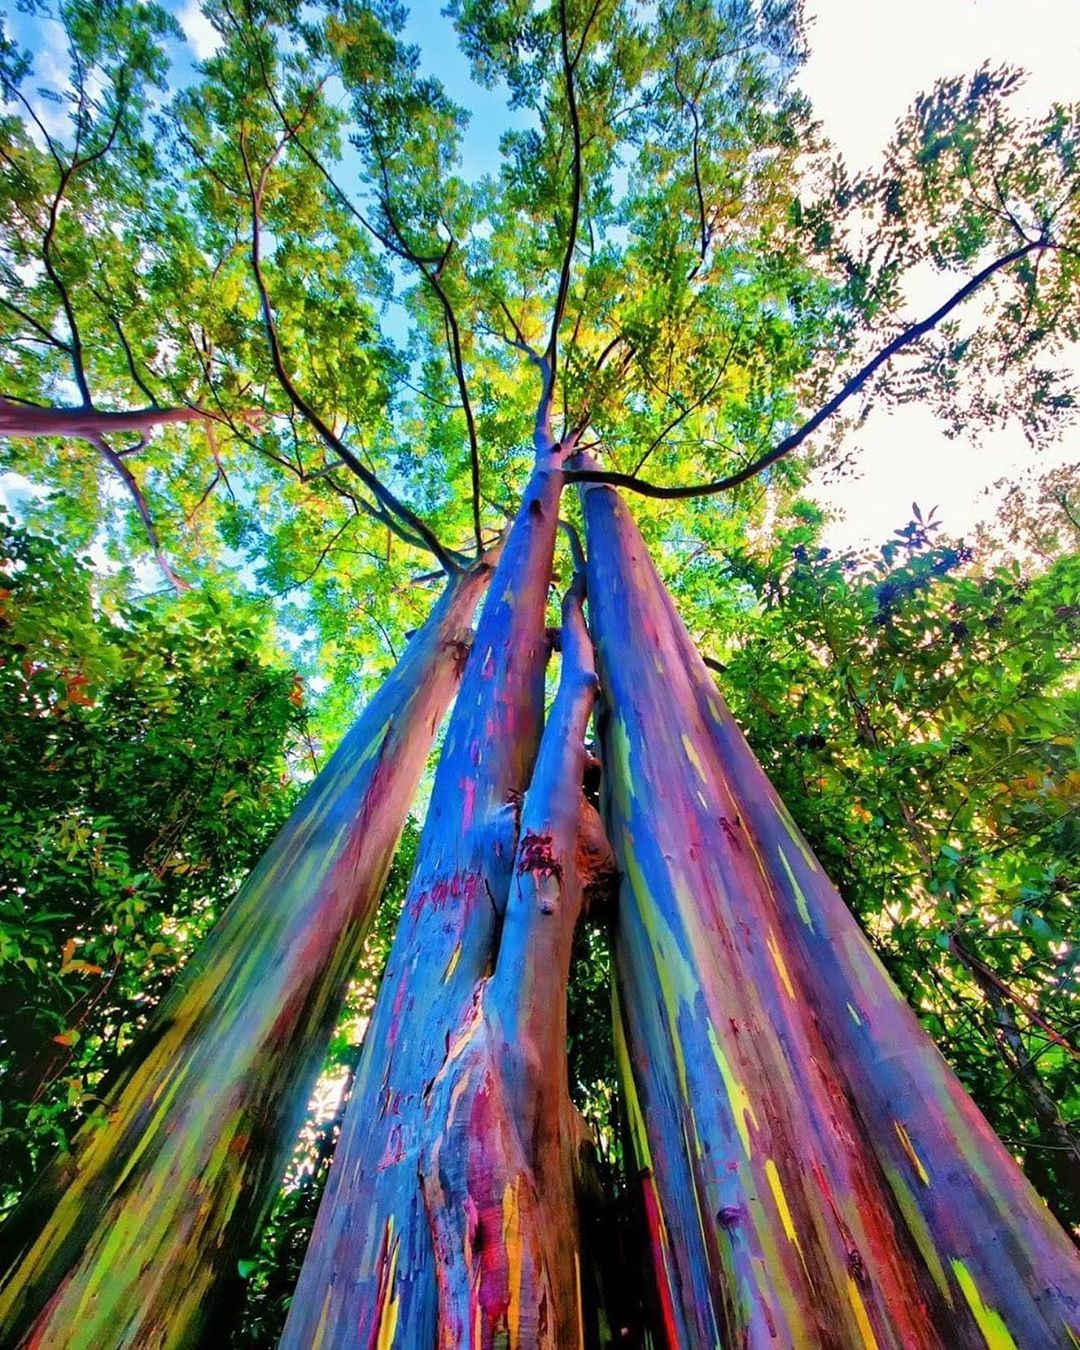 درختی رنگارنگ و معطر با نام "اکالیپتوس رنگین کمان"